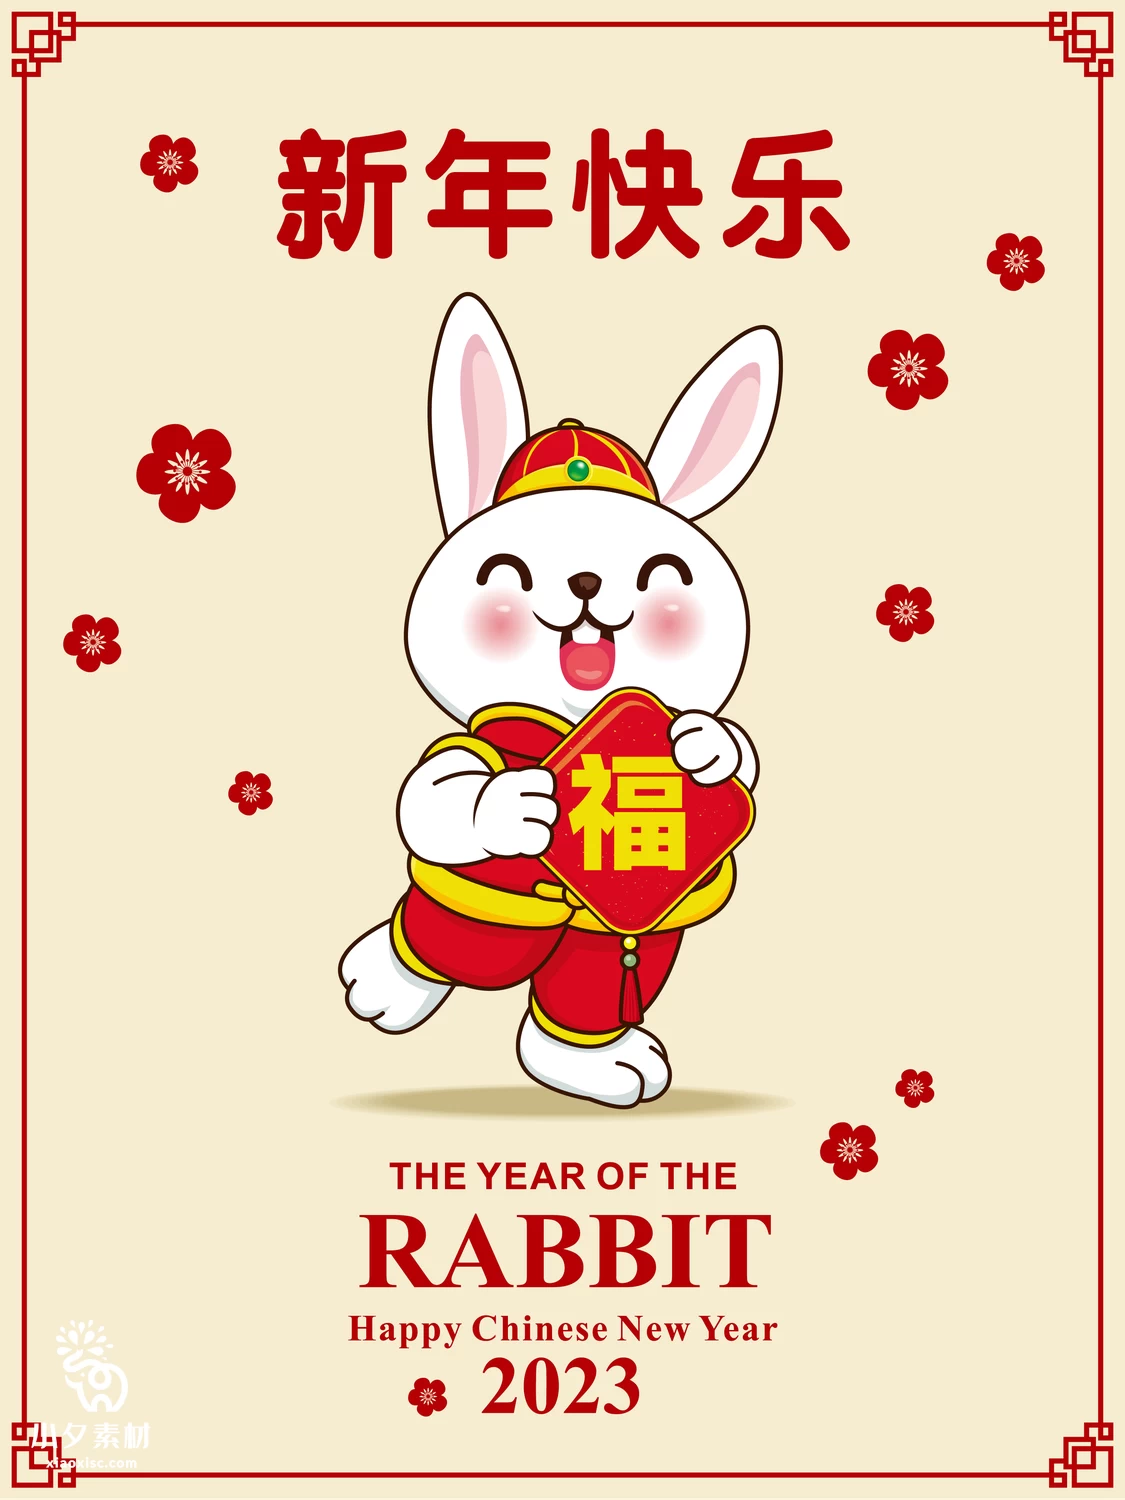 2023年兔年恭贺新春新年快乐喜庆节日宣传海报图片AI矢量设计素材【024】